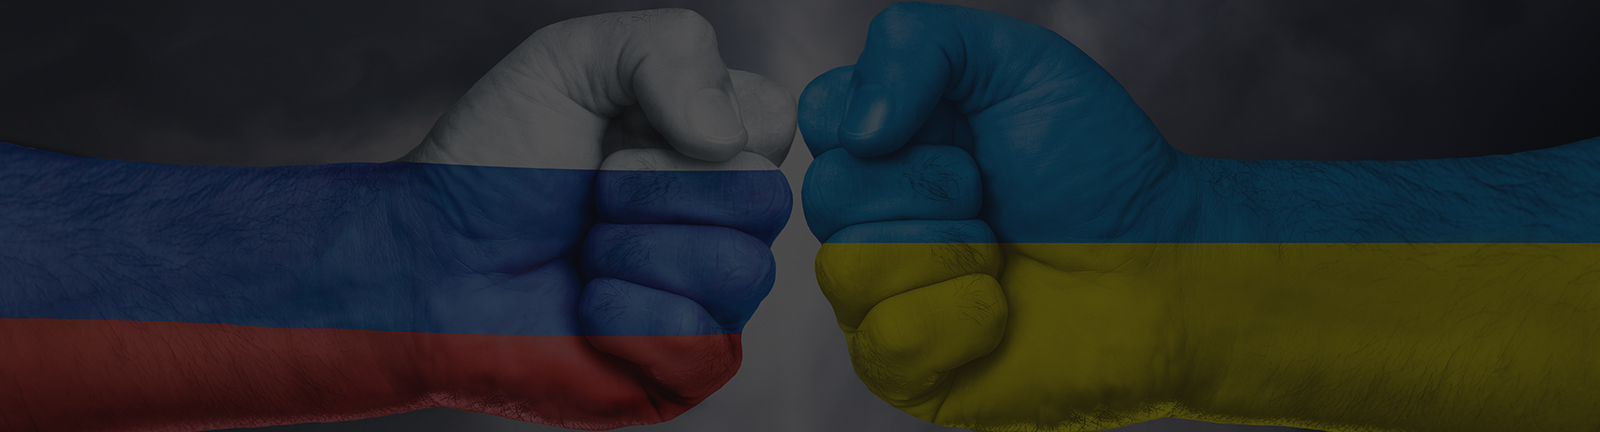 Impact and future outcome of Russia-Ukraine war